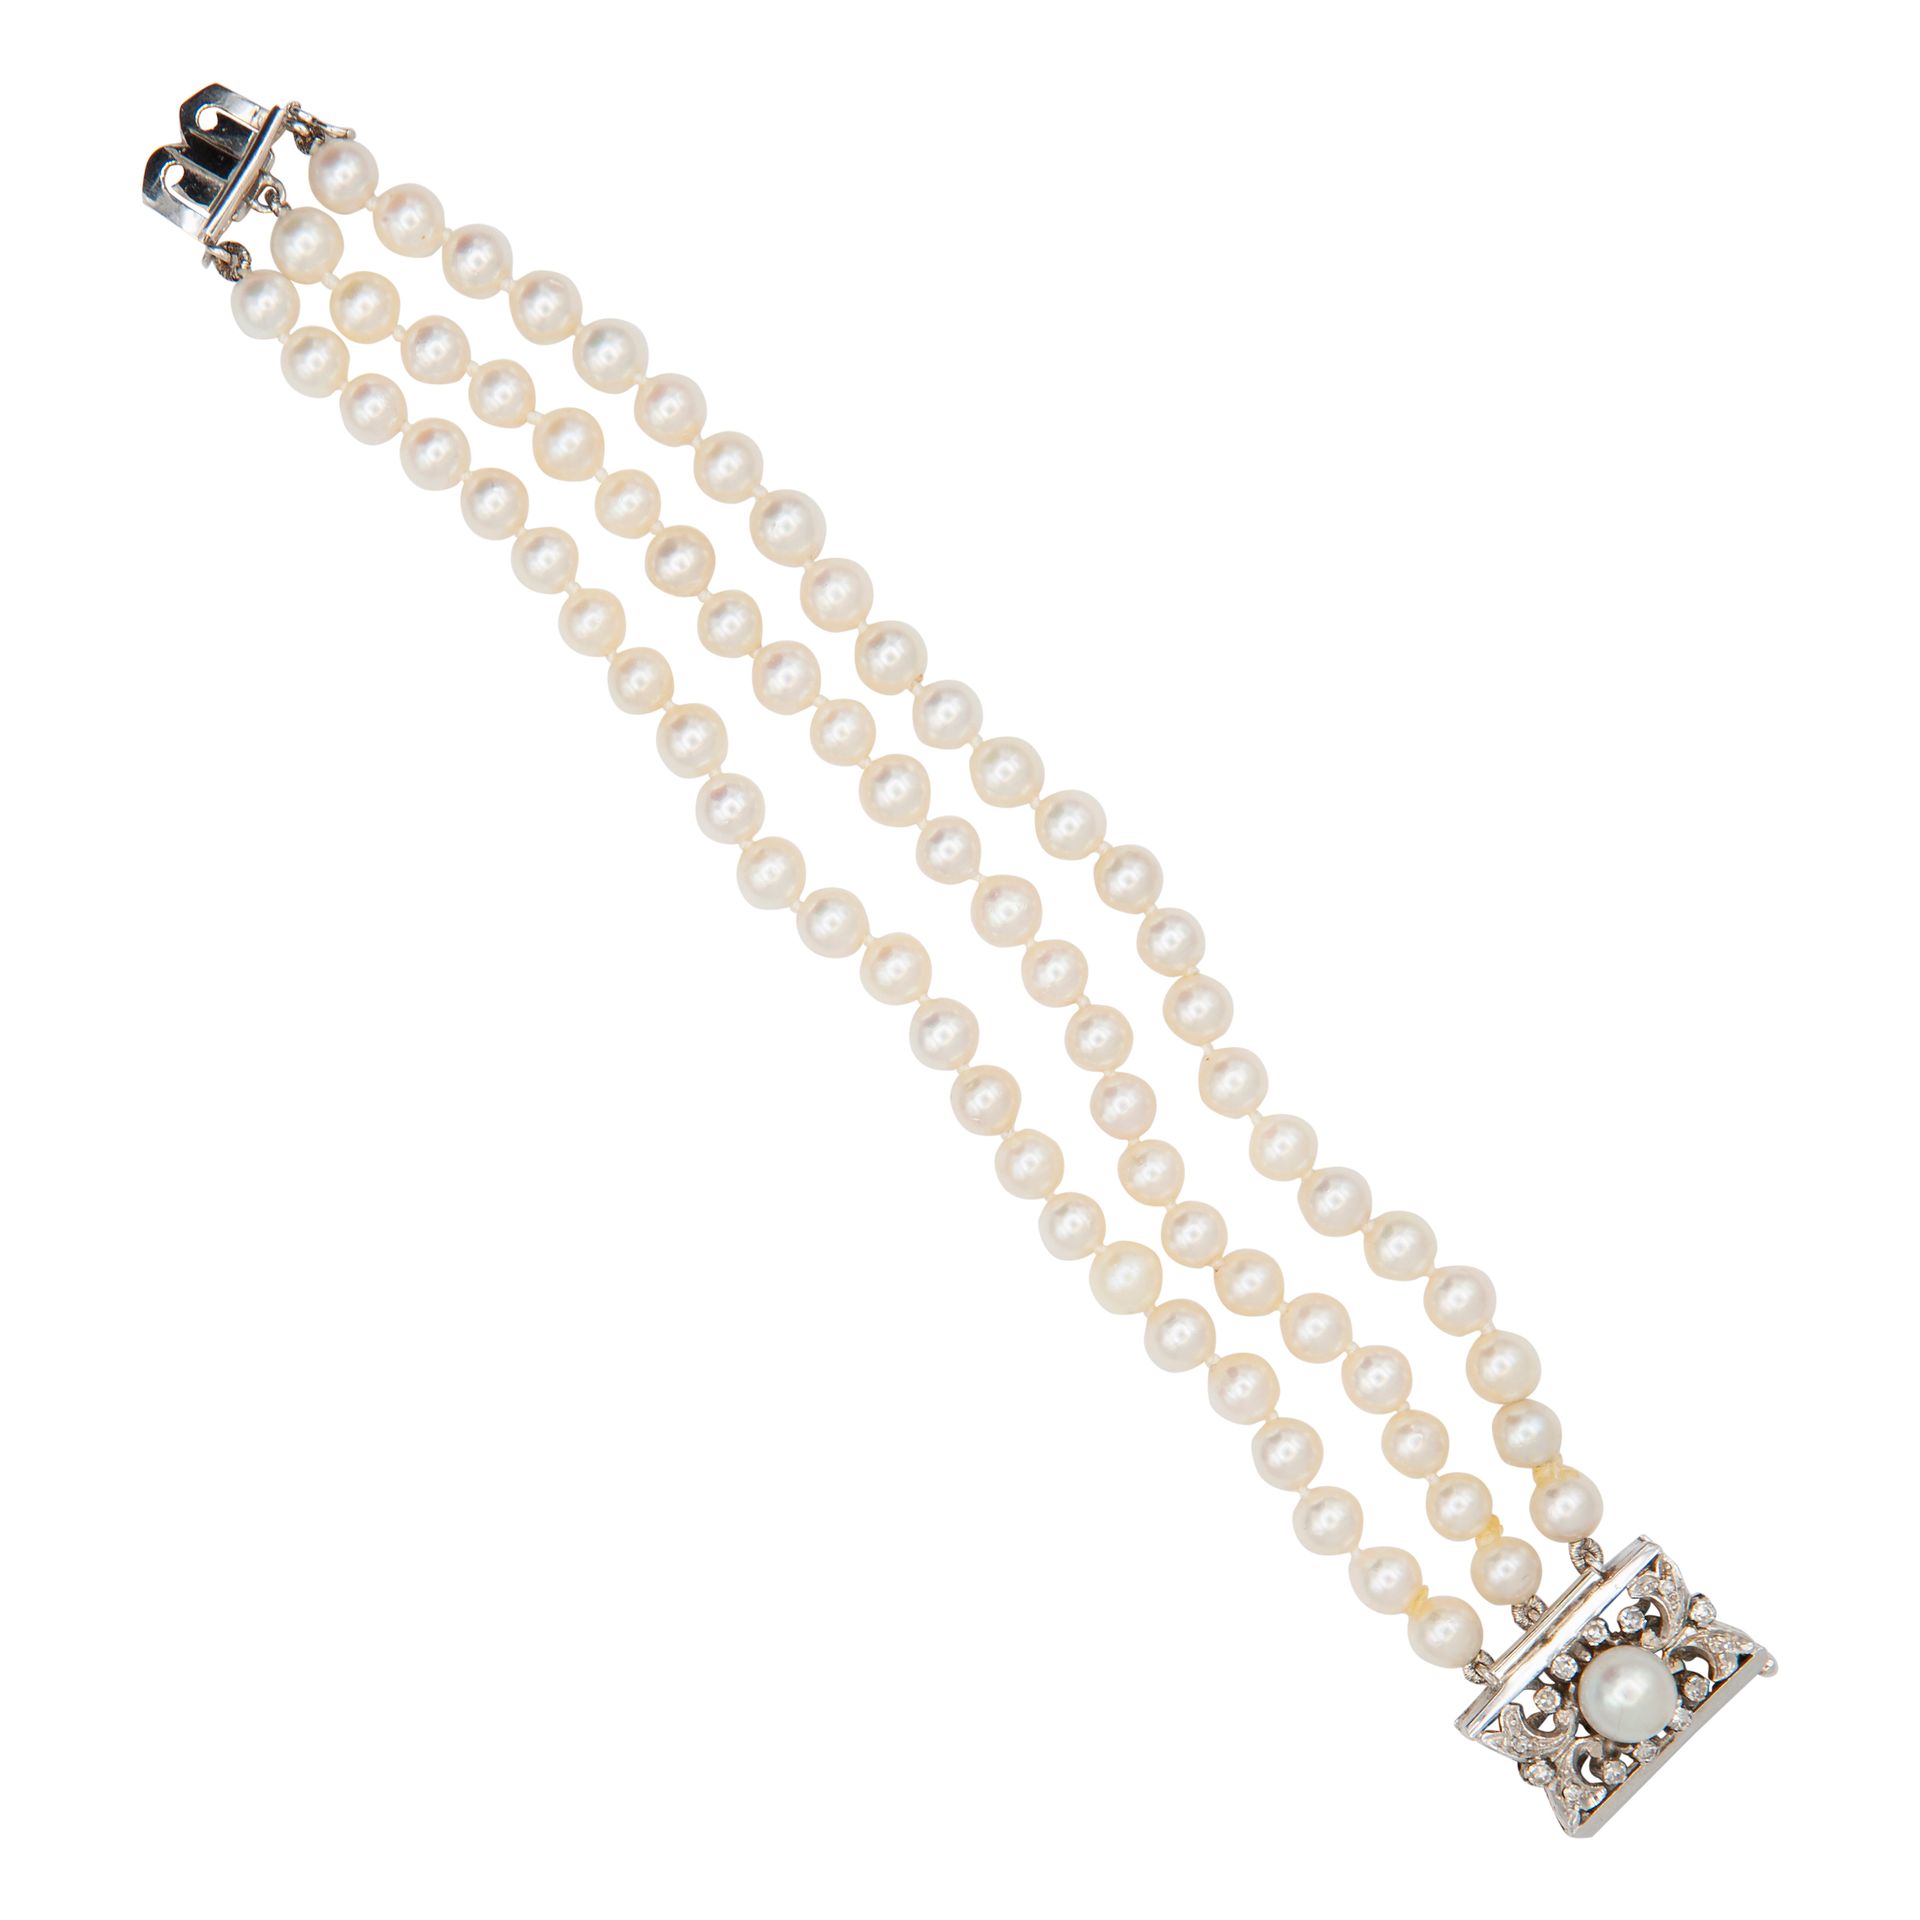 Null 三颗珍珠珠子手链，18K白金封口，带珍珠和钻石。长度为15厘米。重量为27.5克